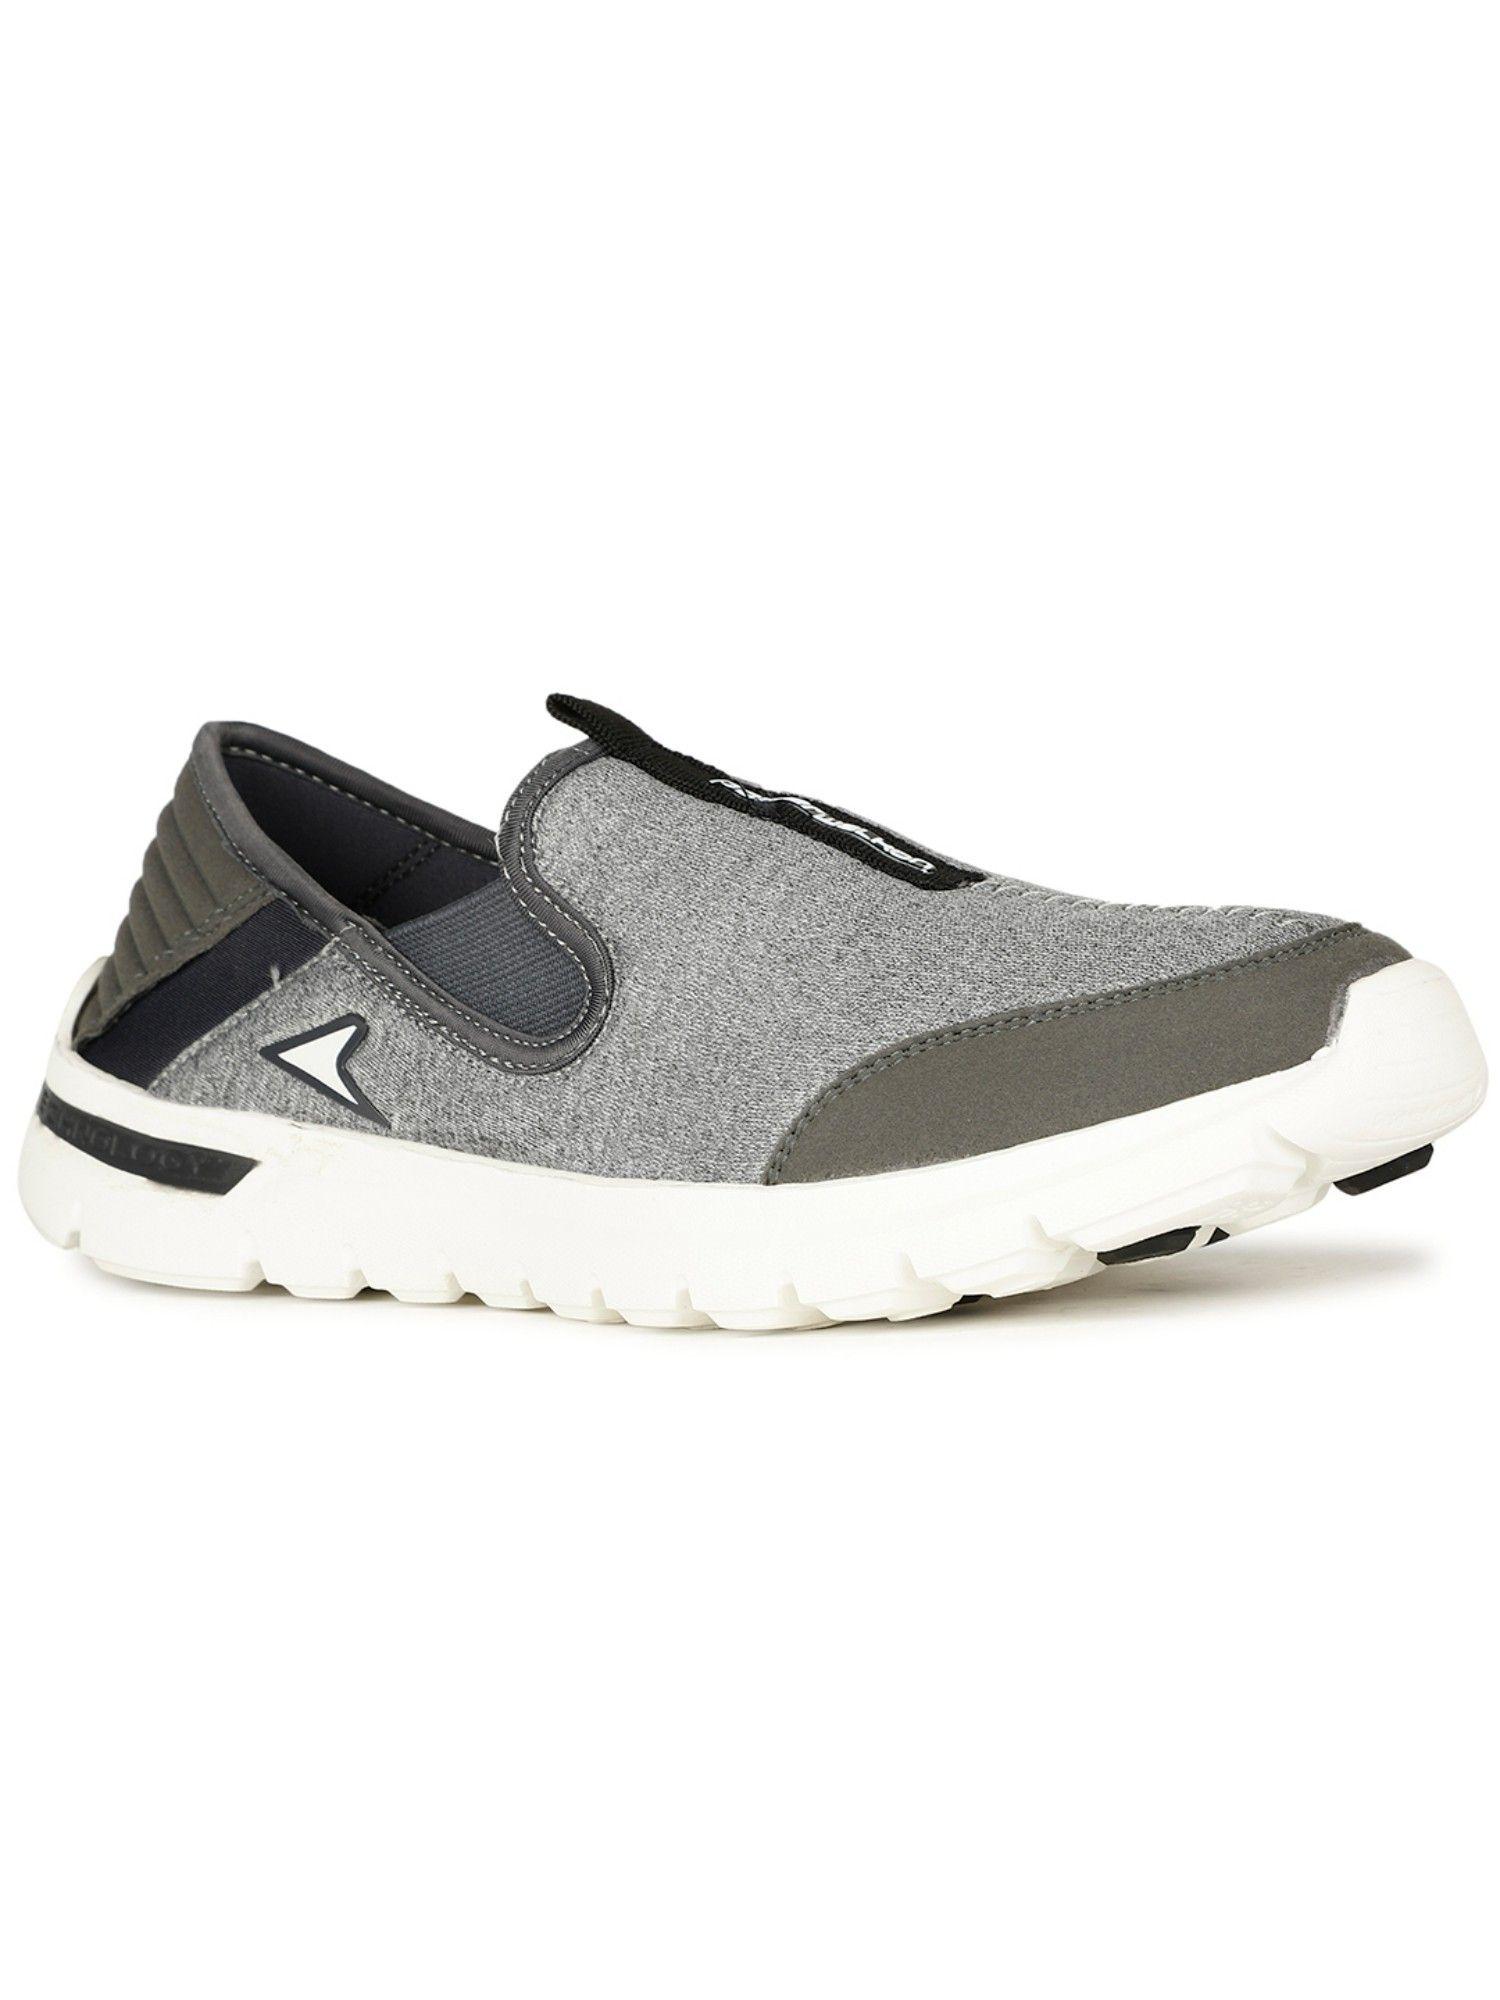 n walk calm walking shoes for men (grey)